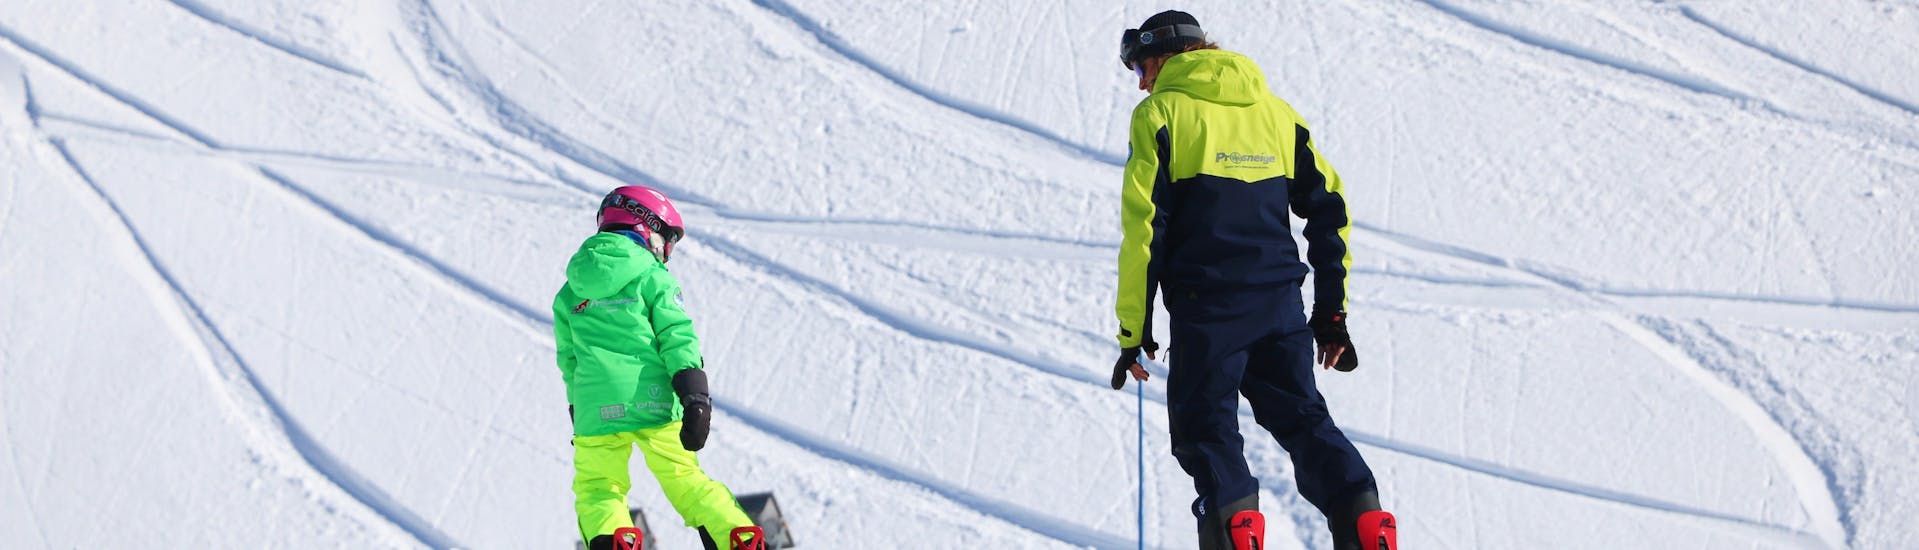 Un enfant apprend le snowboard sous l'œil attentif de son moniteur pendant un Cours particulier de snowboard avec Prosneige Val Thorens & Les Menuires.